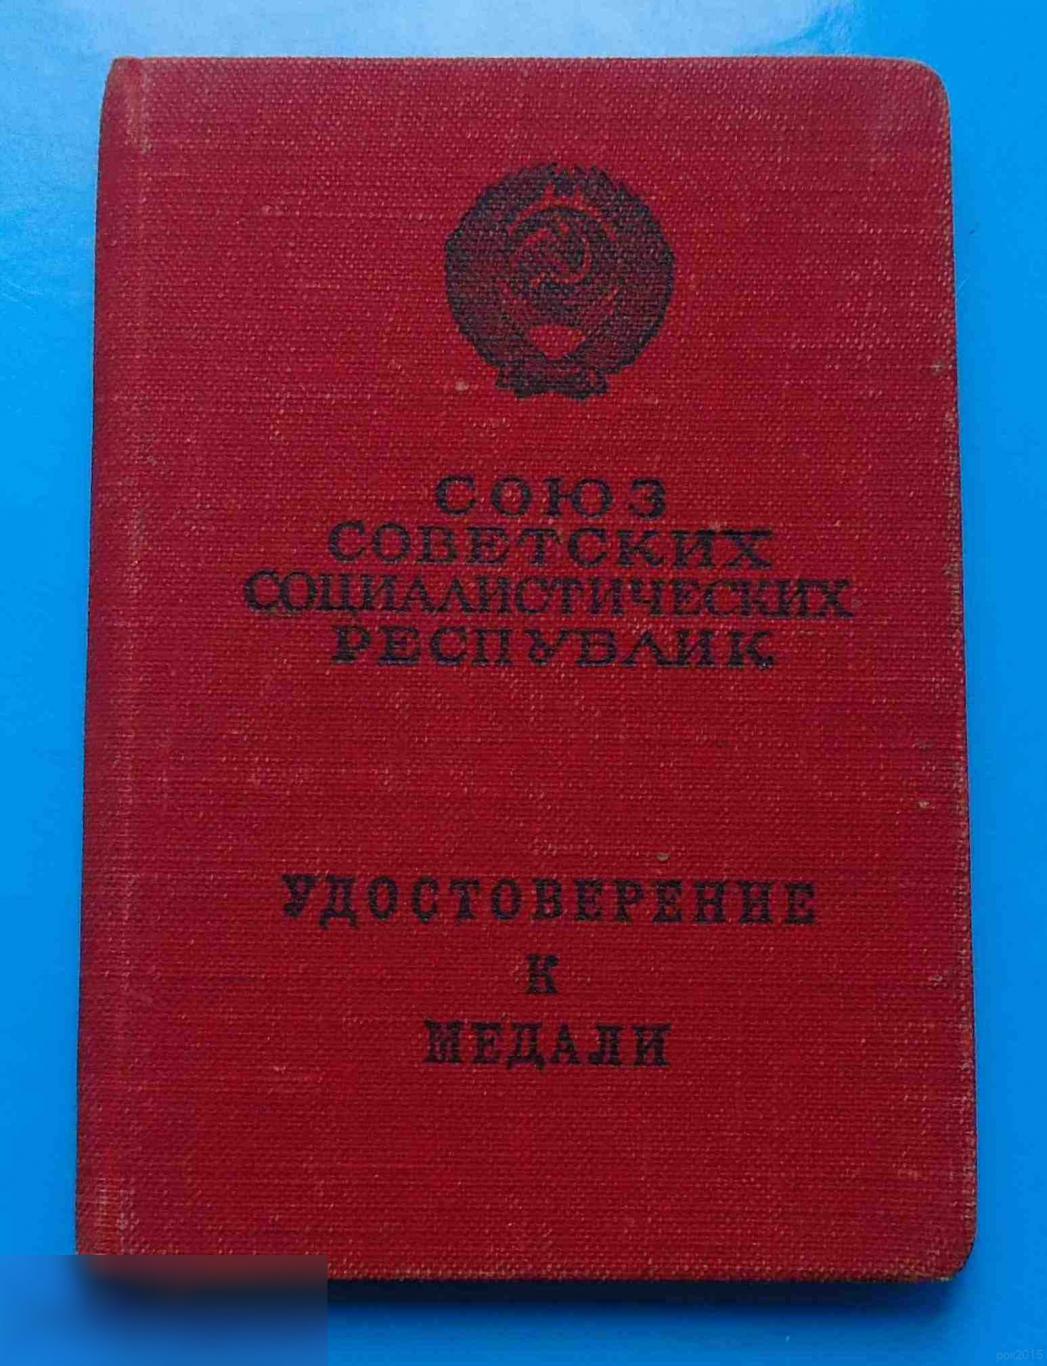 Удостоверение к медали За боевые заслуги б/н 1954 Борисенко док